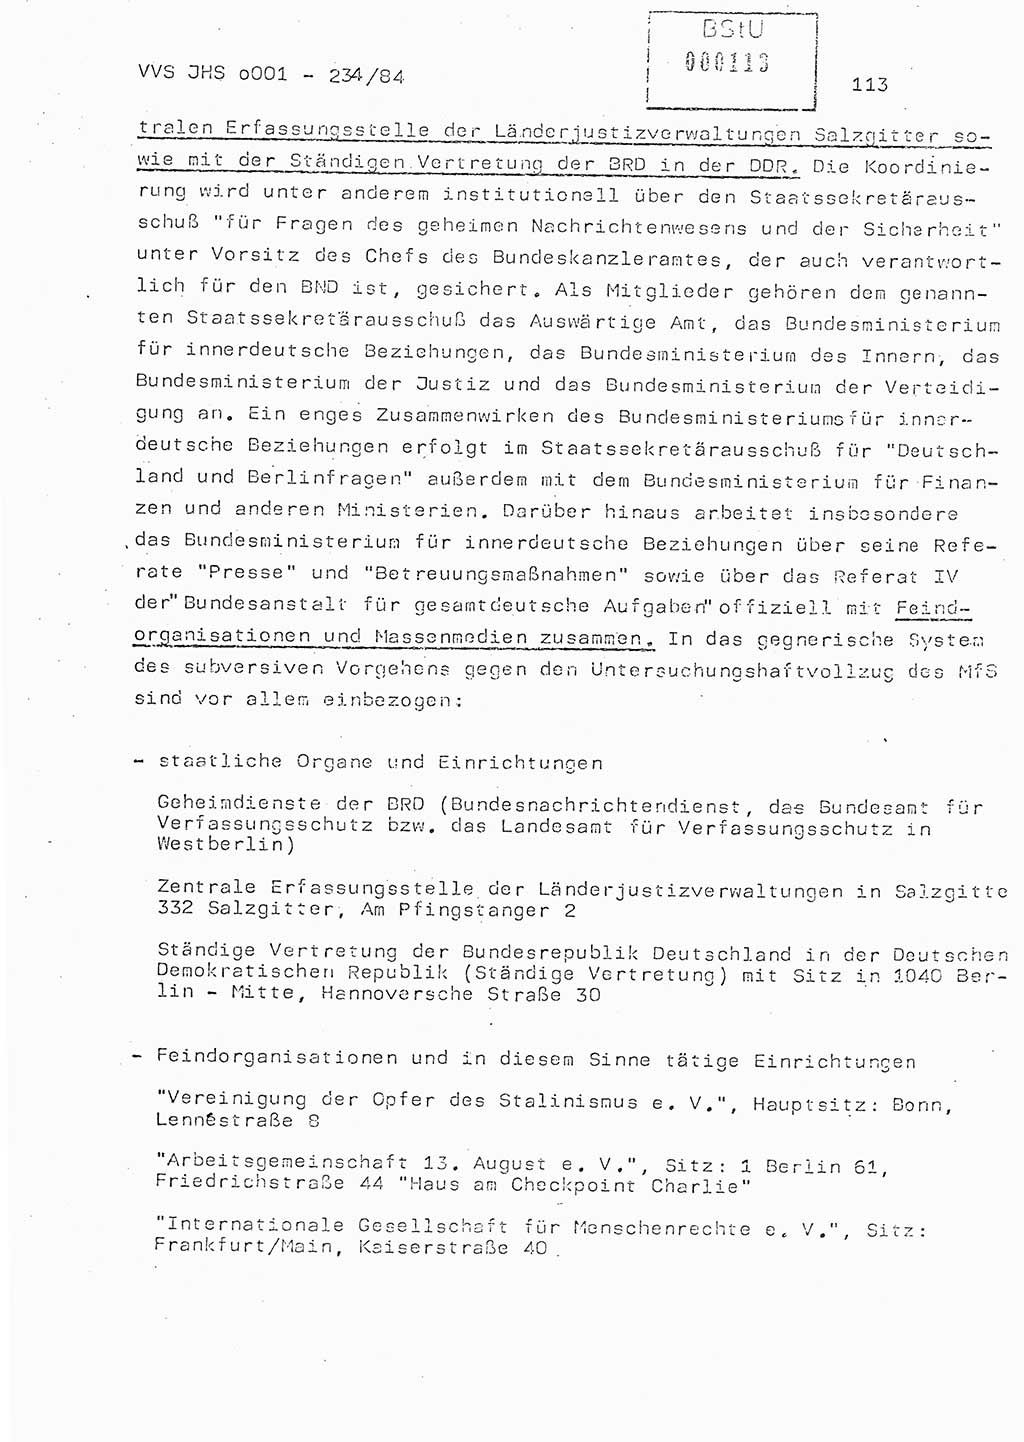 Dissertation Oberst Siegfried Rataizick (Abt. ⅩⅣ), Oberstleutnant Volkmar Heinz (Abt. ⅩⅣ), Oberstleutnant Werner Stein (HA Ⅸ), Hauptmann Heinz Conrad (JHS), Ministerium für Staatssicherheit (MfS) [Deutsche Demokratische Republik (DDR)], Juristische Hochschule (JHS), Vertrauliche Verschlußsache (VVS) o001-234/84, Potsdam 1984, Seite 113 (Diss. MfS DDR JHS VVS o001-234/84 1984, S. 113)